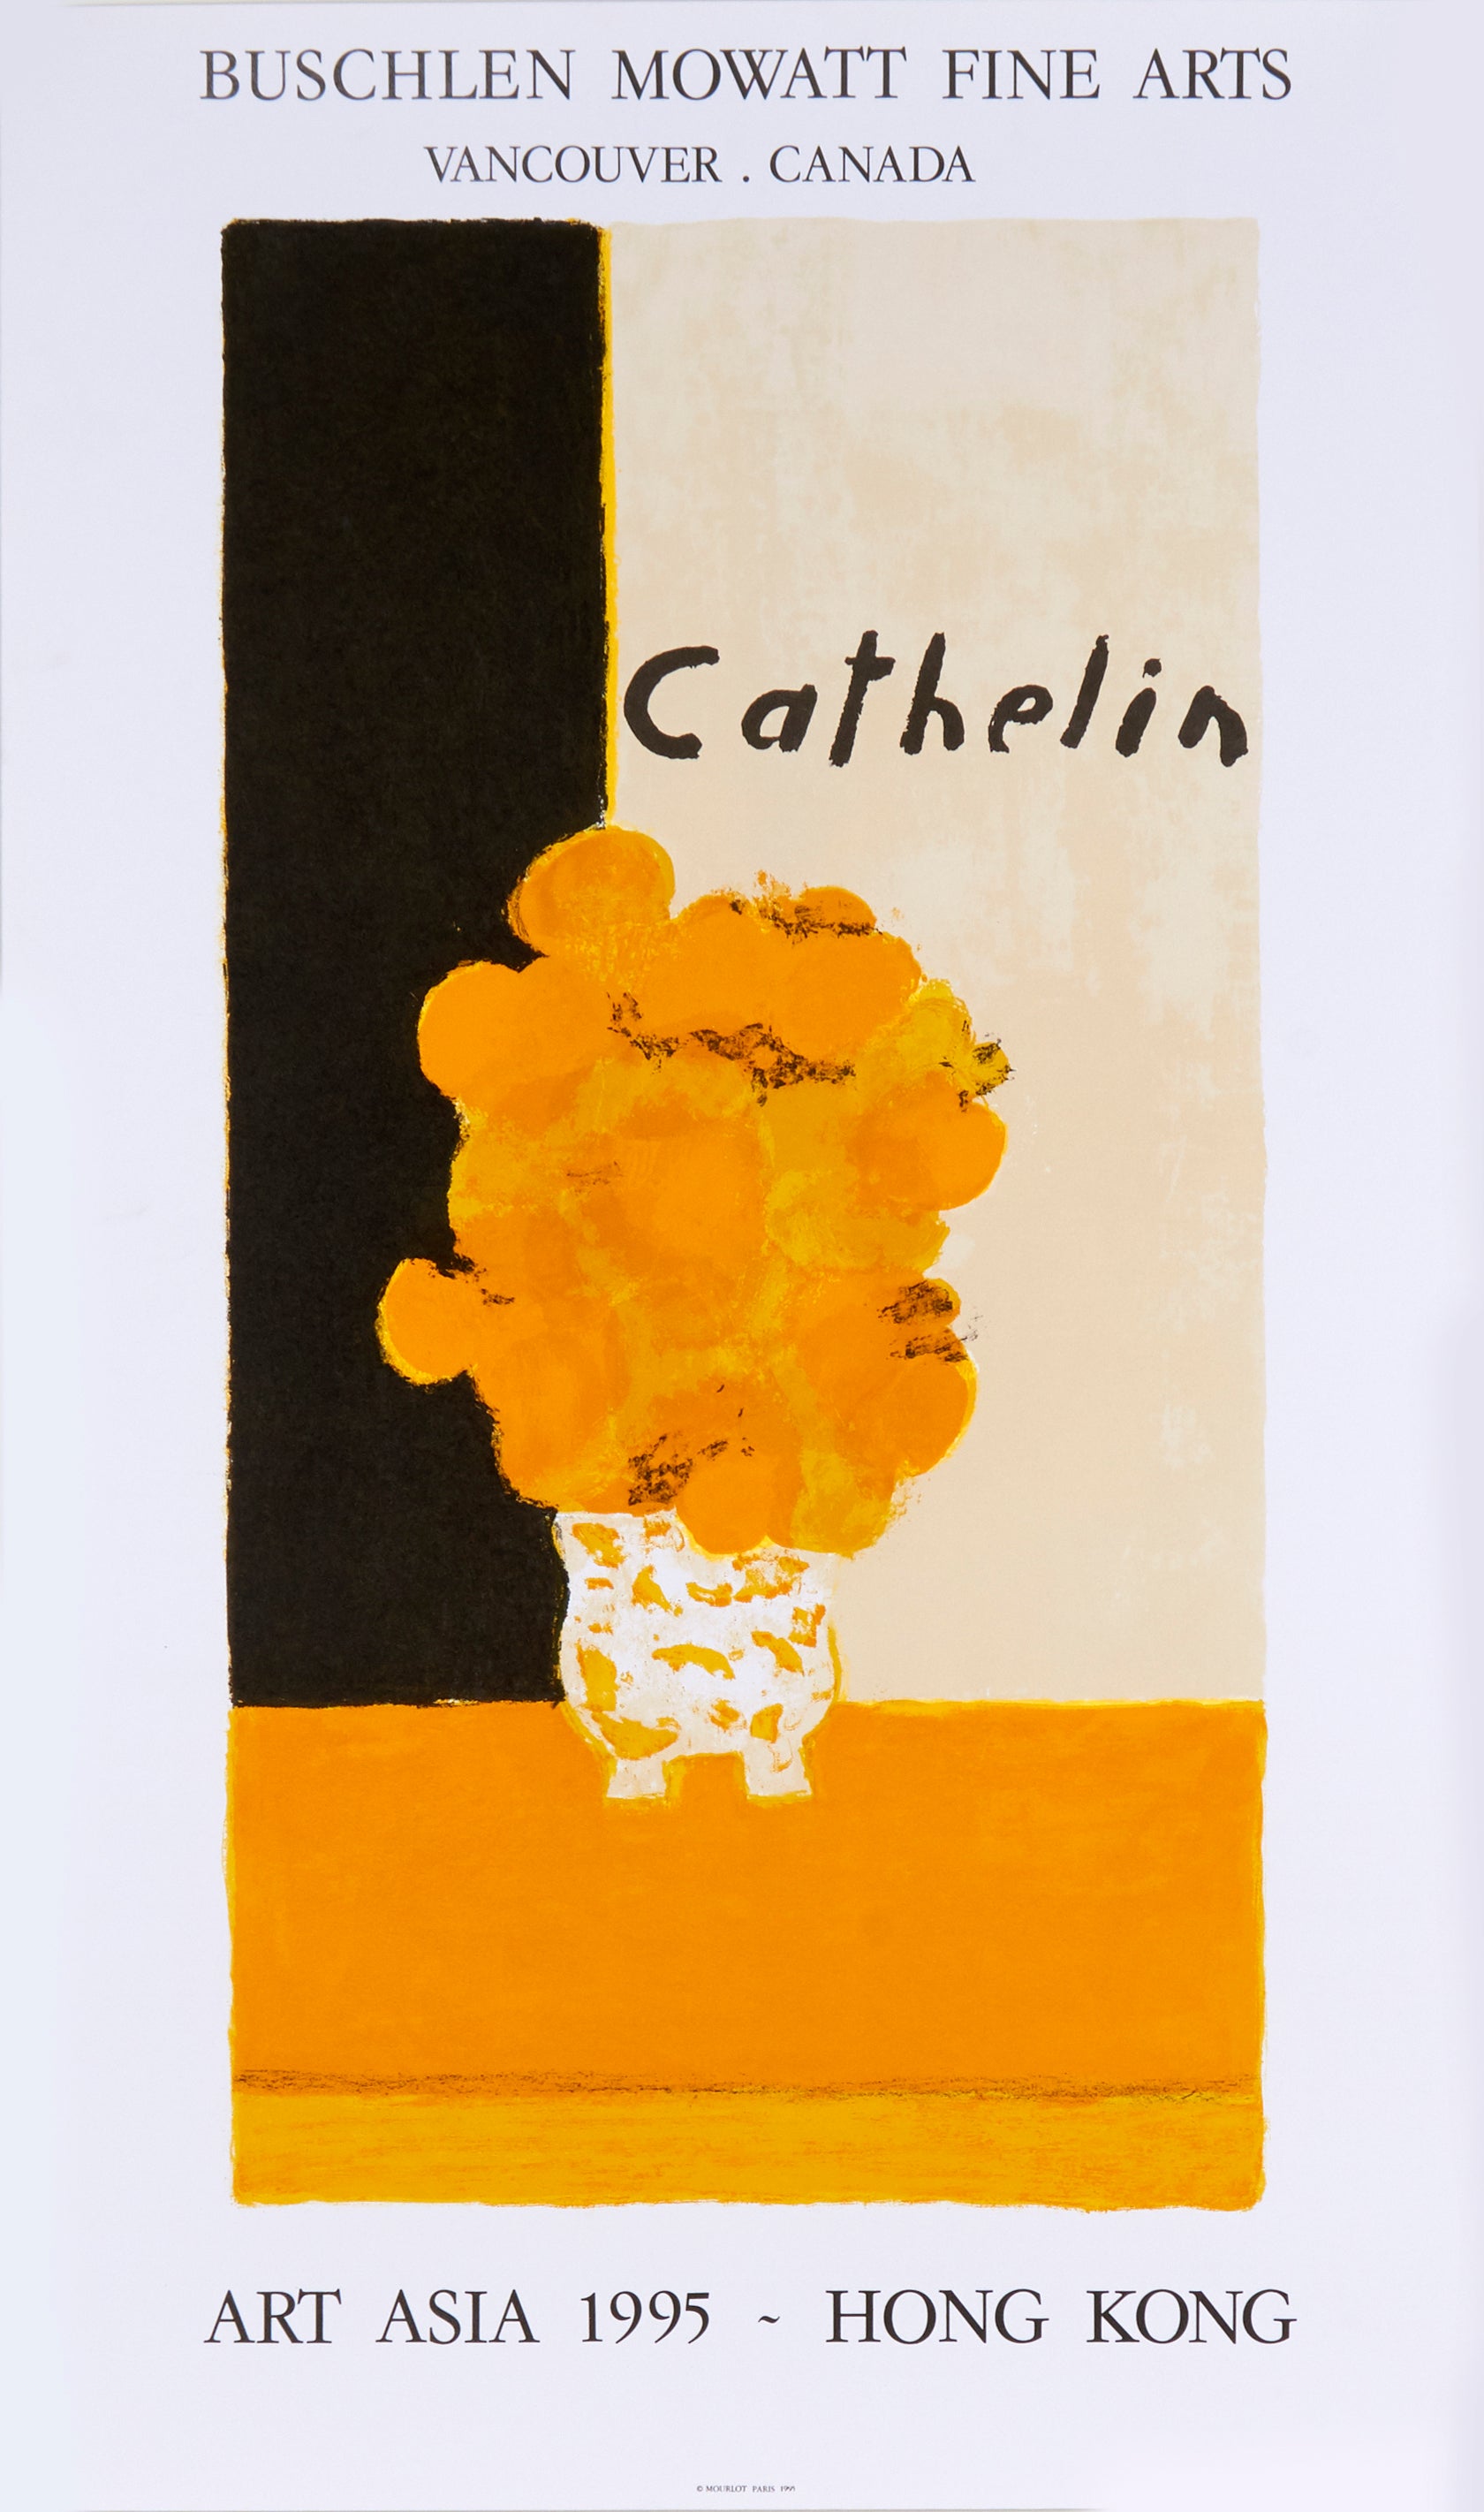 ◇送料無料◇『ATELIER DES REBATTIERES』Cathelin Buschlen Mowatt Gallery Vancouver A3 -15 ベルナール・カトラン - 通販 - wlhtcy.com